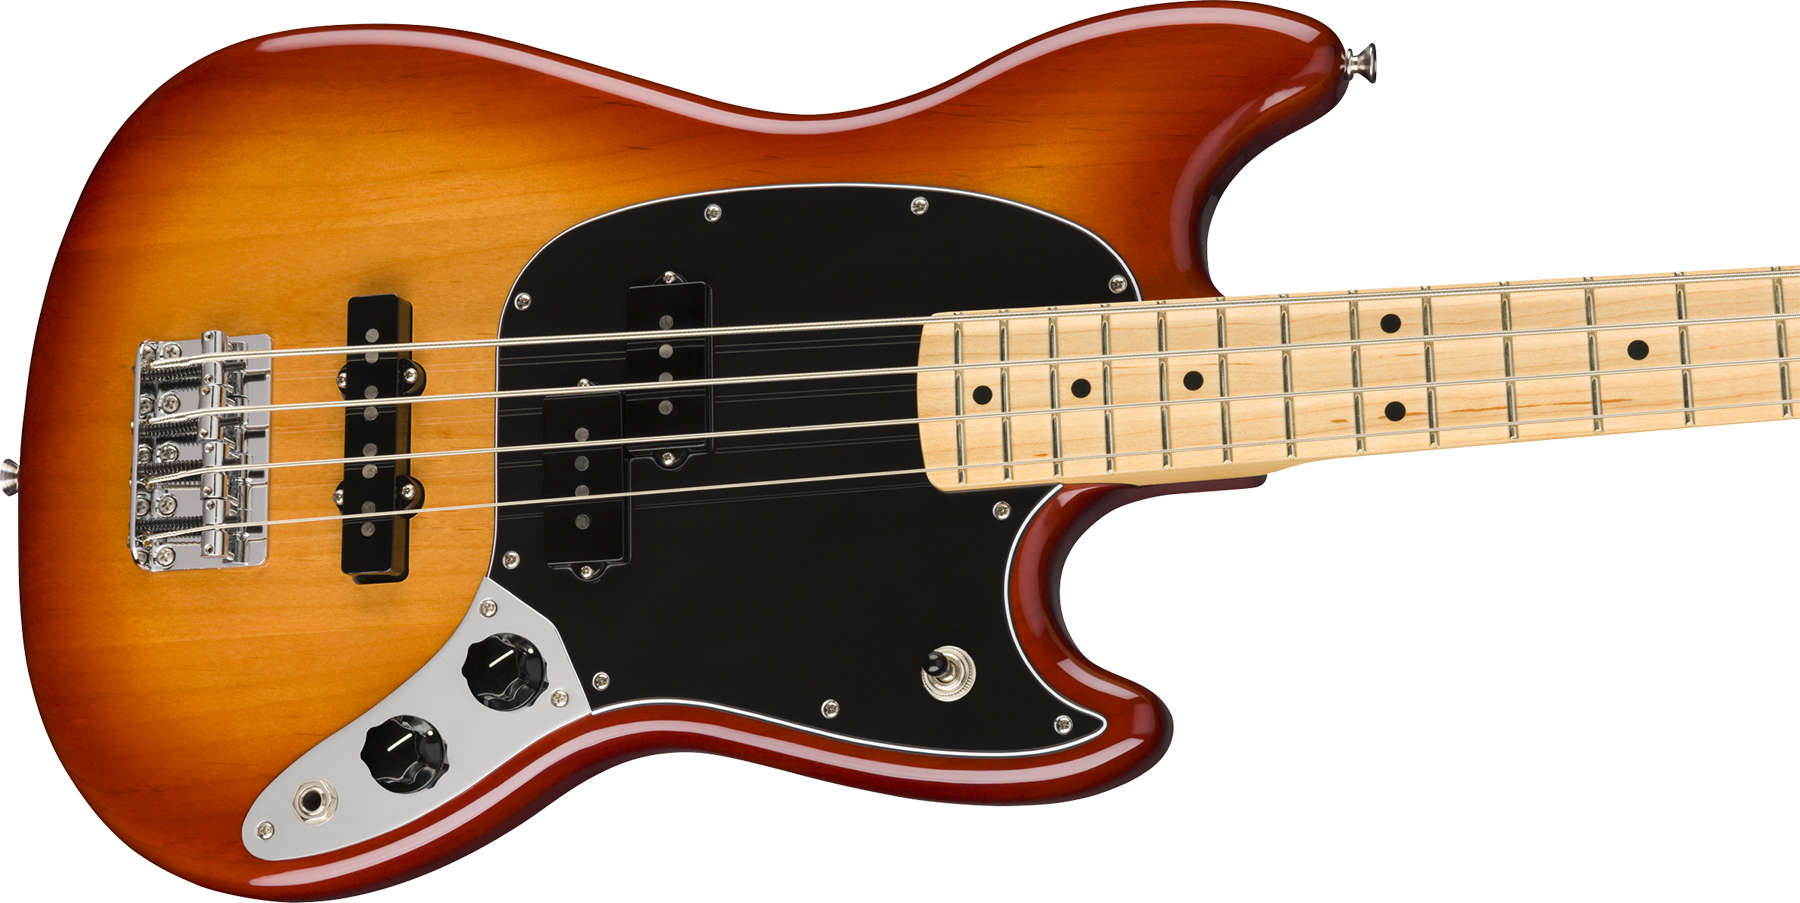 Fender Player Mustang Bass Mex Pj Mn - Sienna Sunburst - Short scale elektrische bas - Variation 2